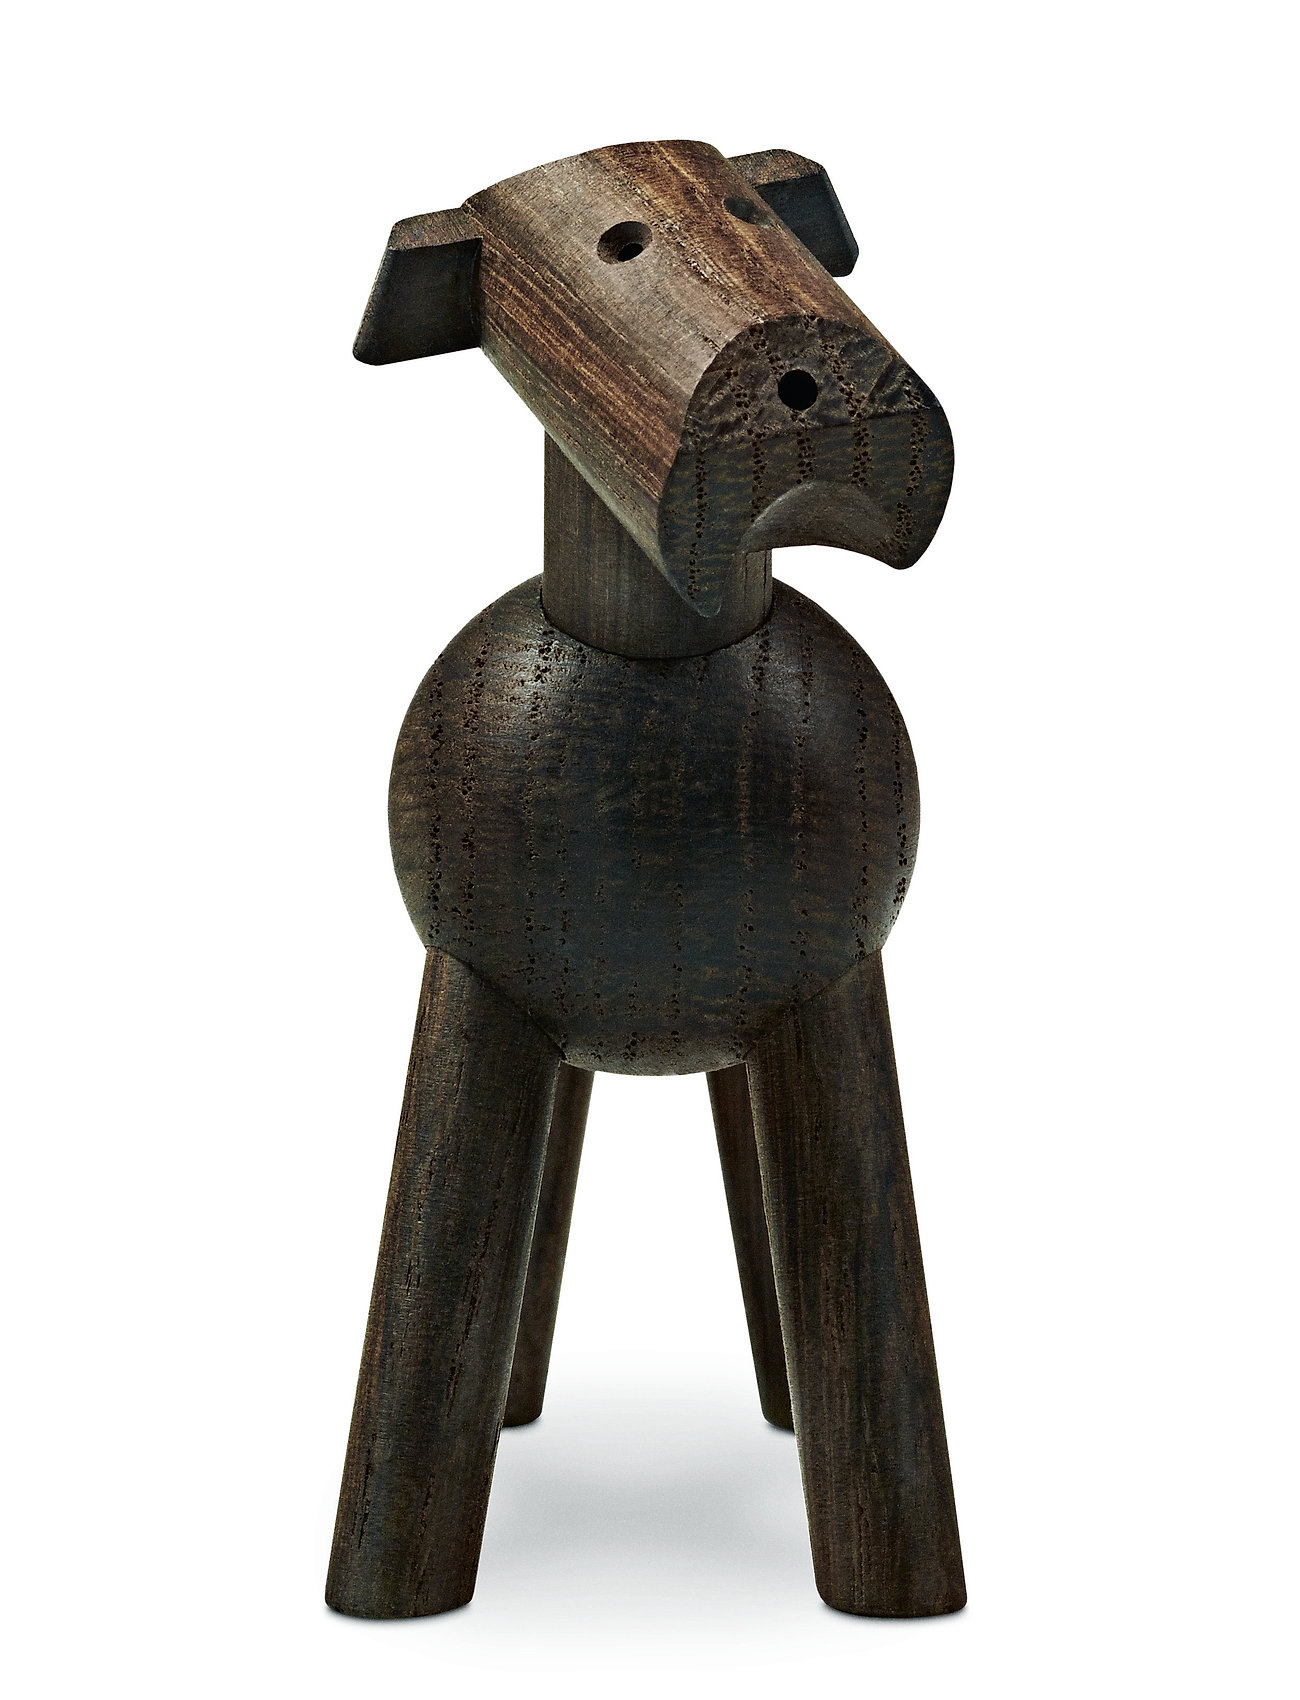 Kay Bojesen - Tim - wooden figures - smoked oak - 1